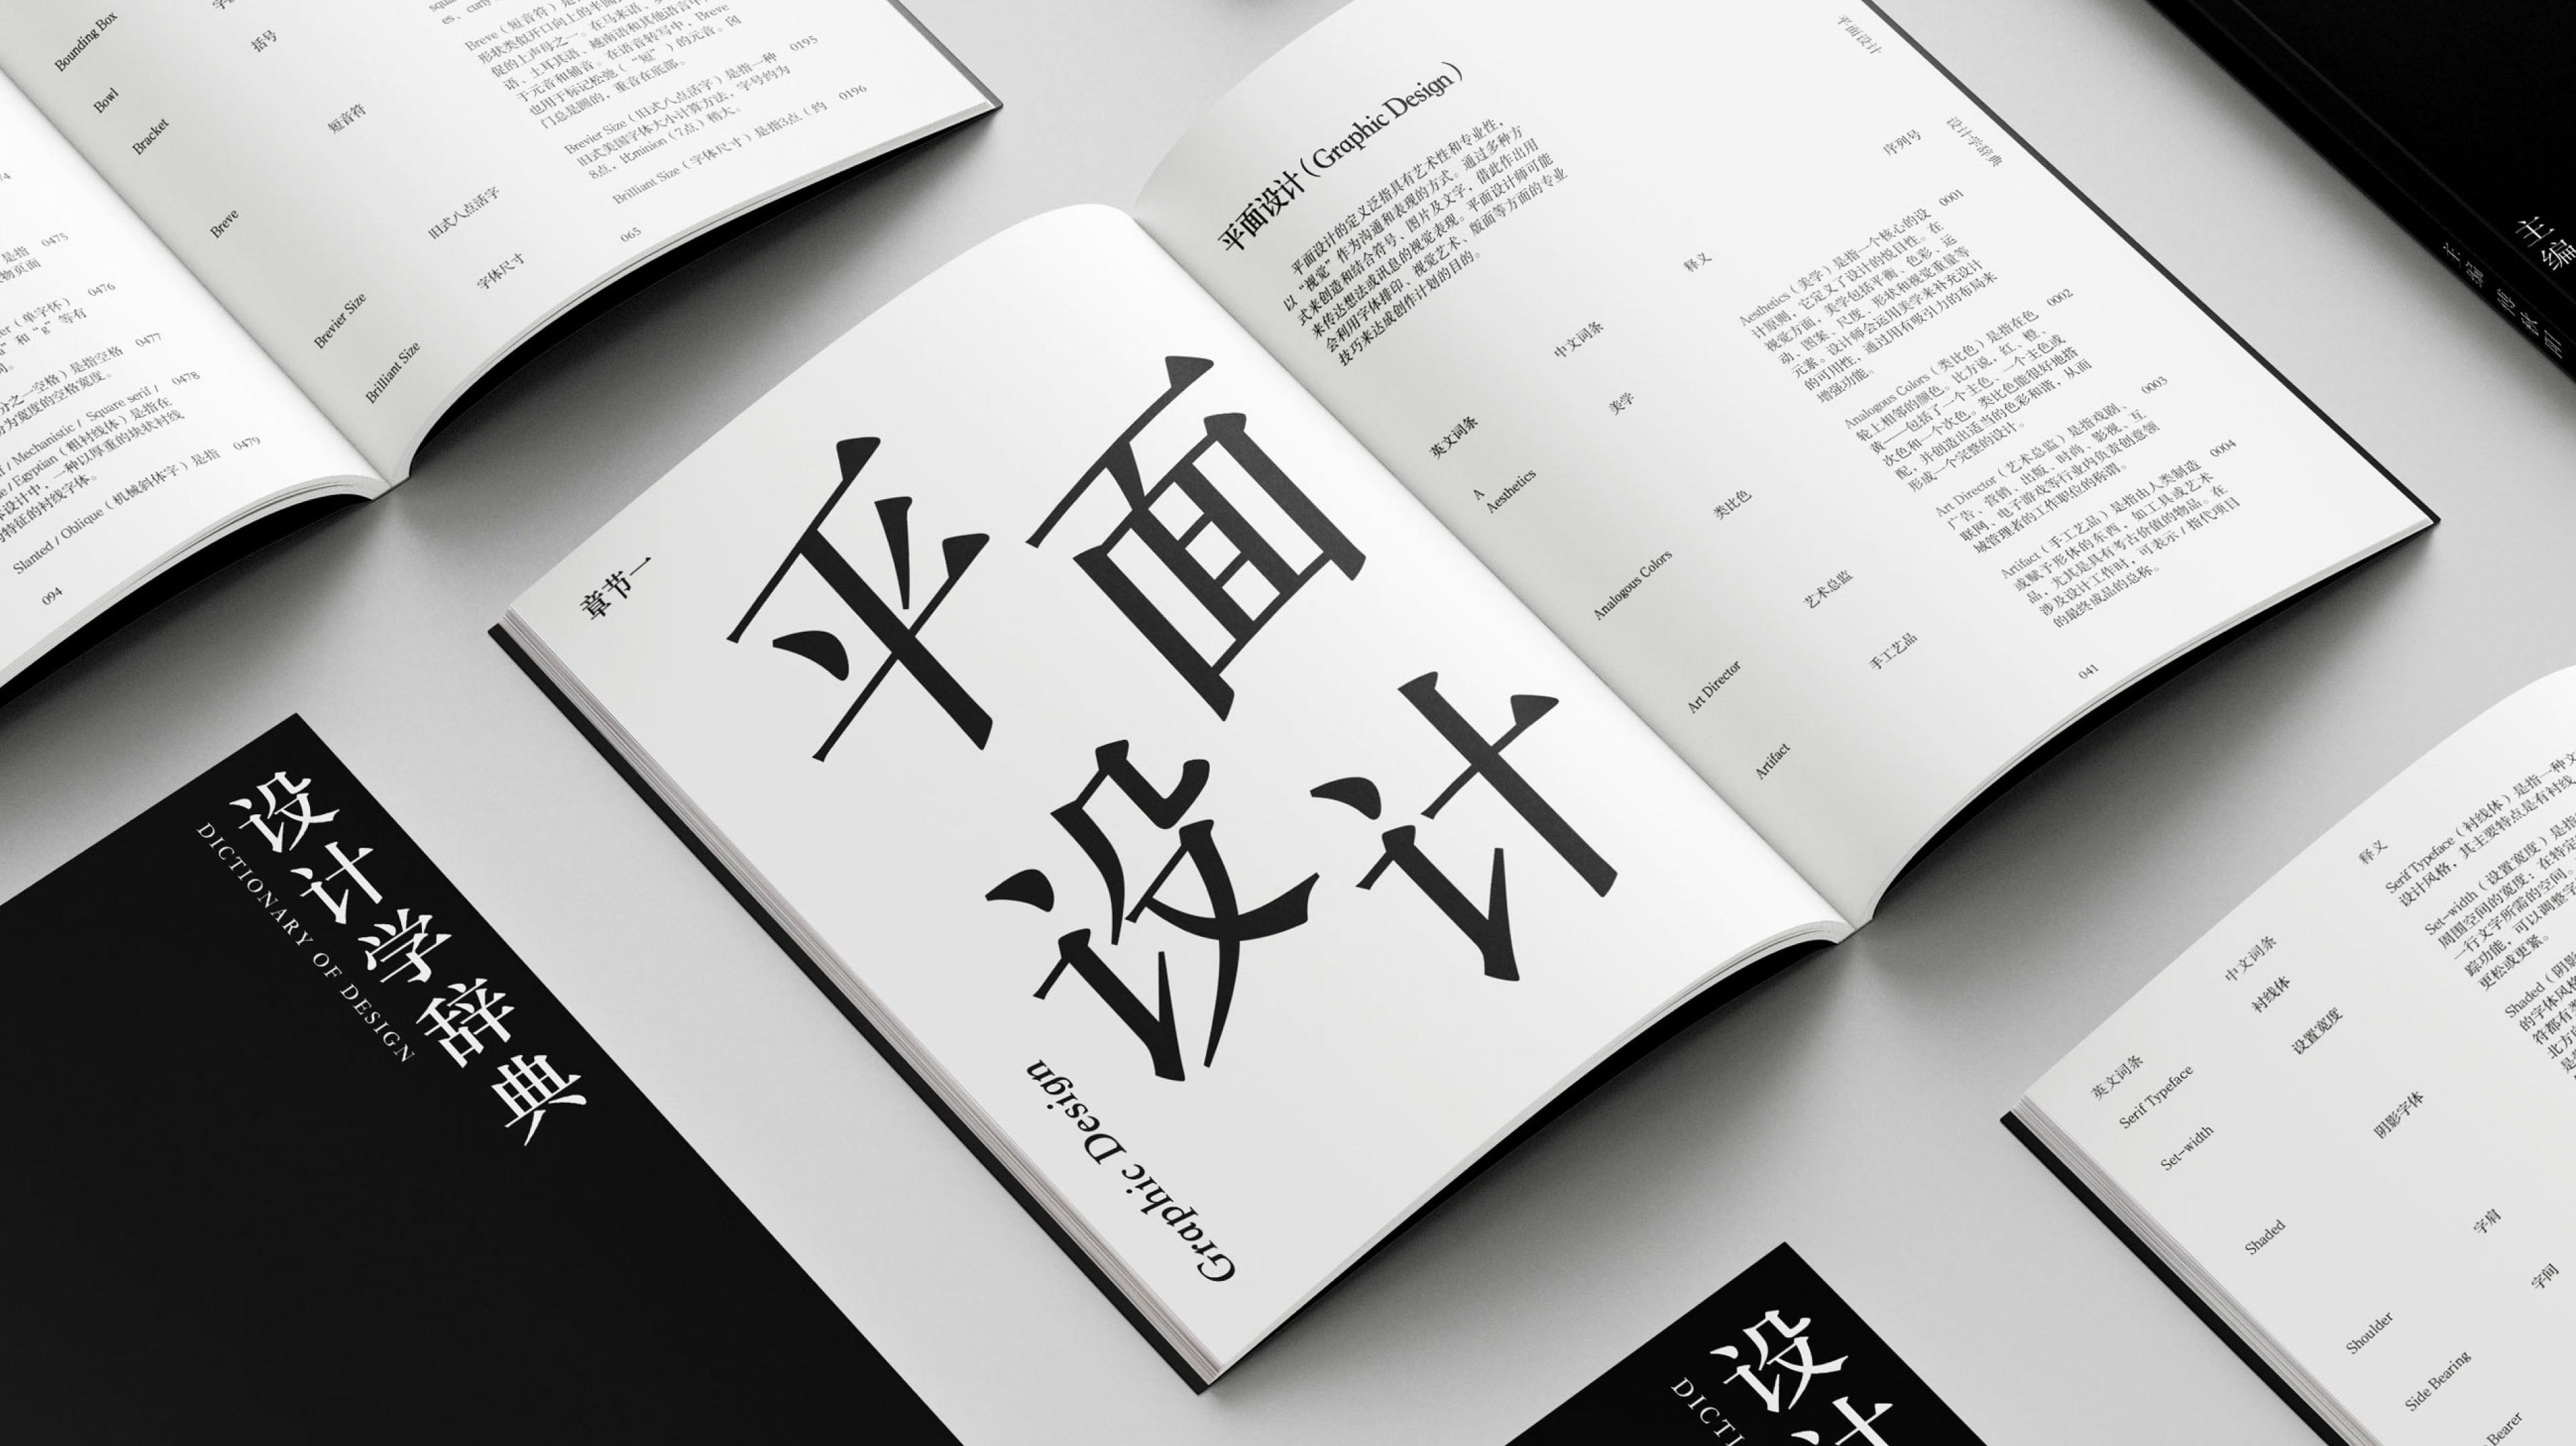 设计学辞典 / Dictionary of Design - Danni Xi